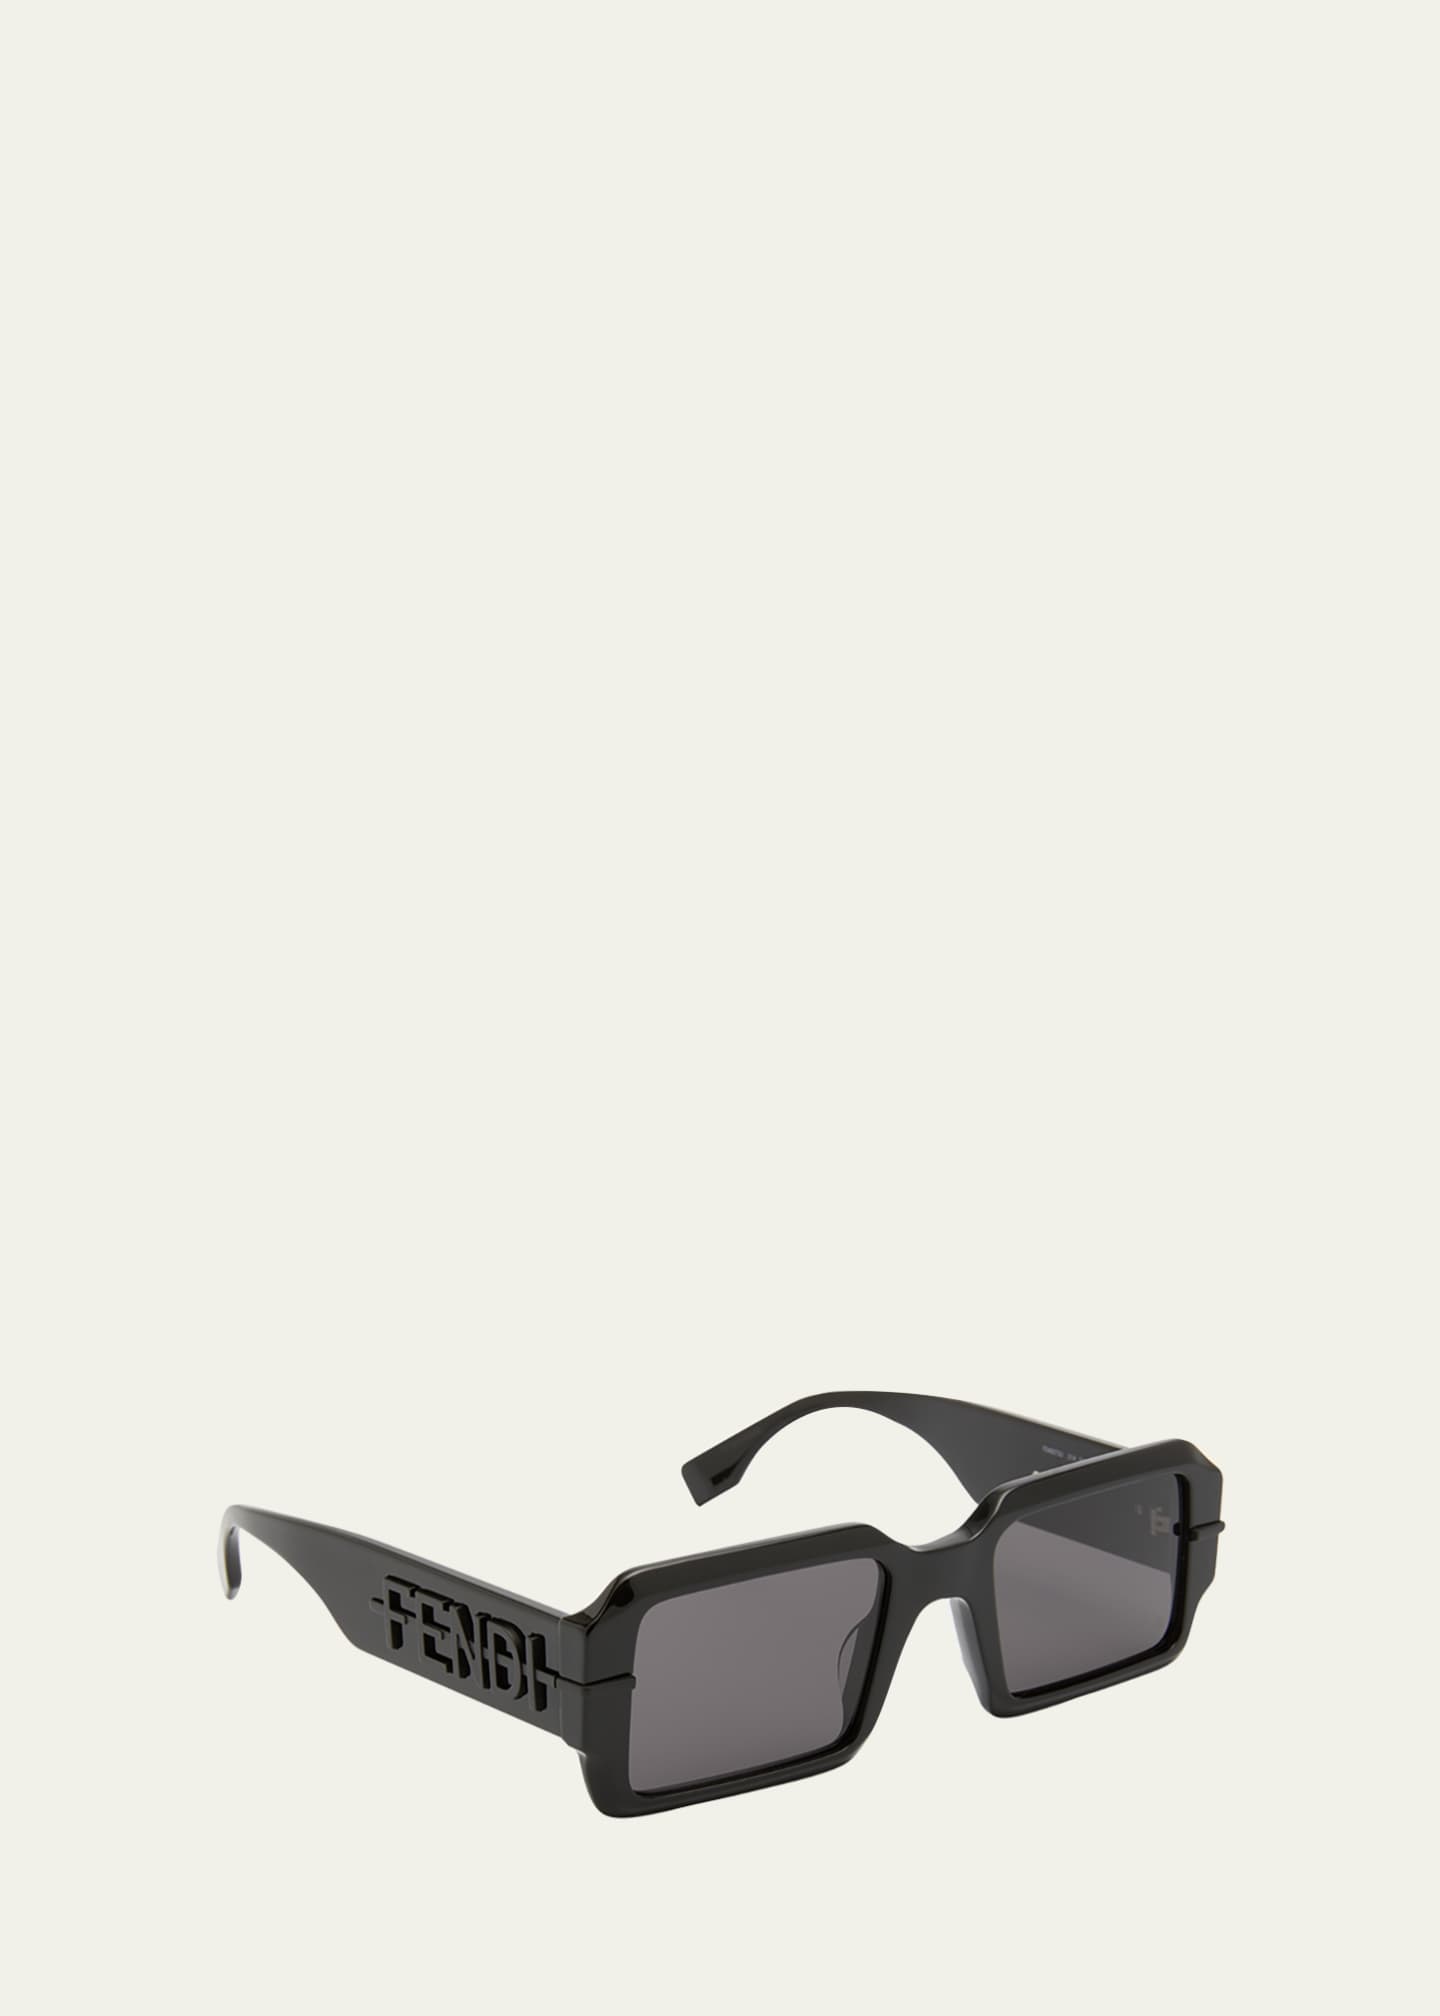 louis vuitton Male Unisex Sunglasses, Size: Free